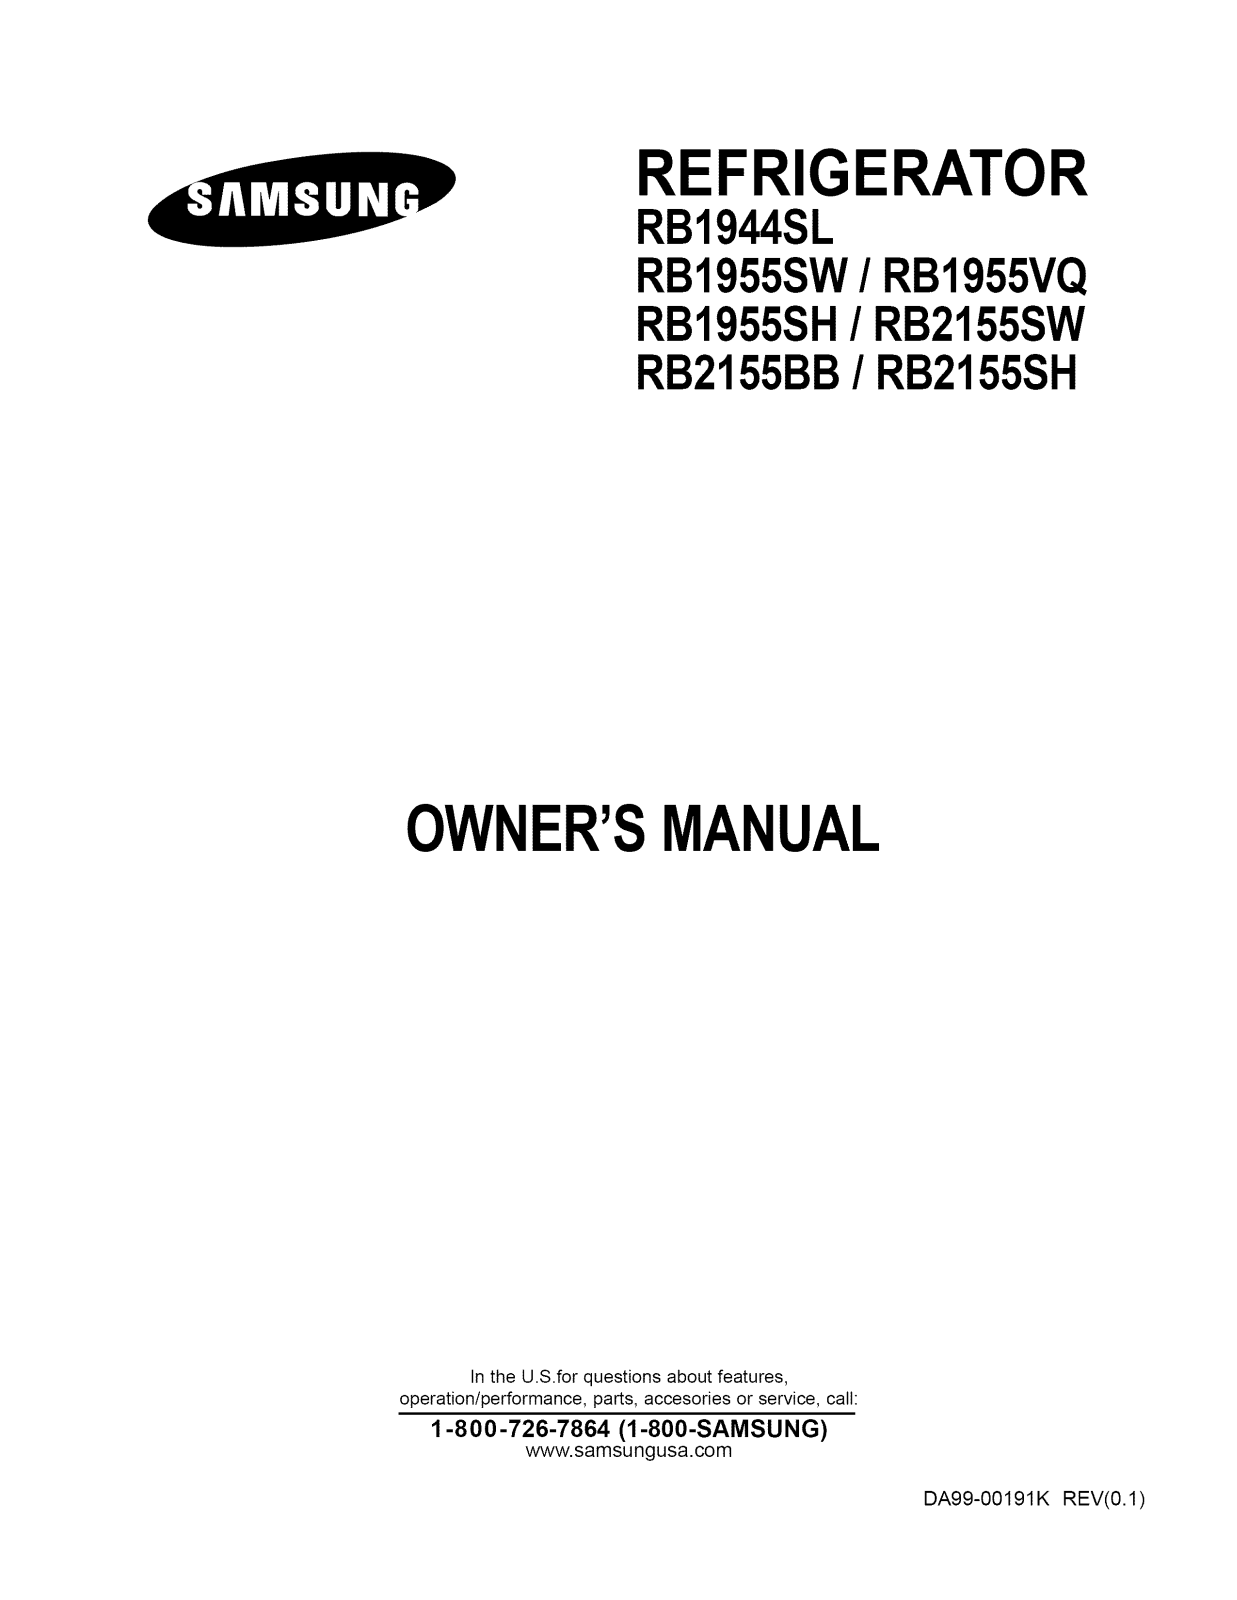 Samsung RB2155SW/XAA, RB2155SH/XAA, RB2155BB/XAA, RB1955VQ/XAA, RB1955SW/XAA Owner’s Manual